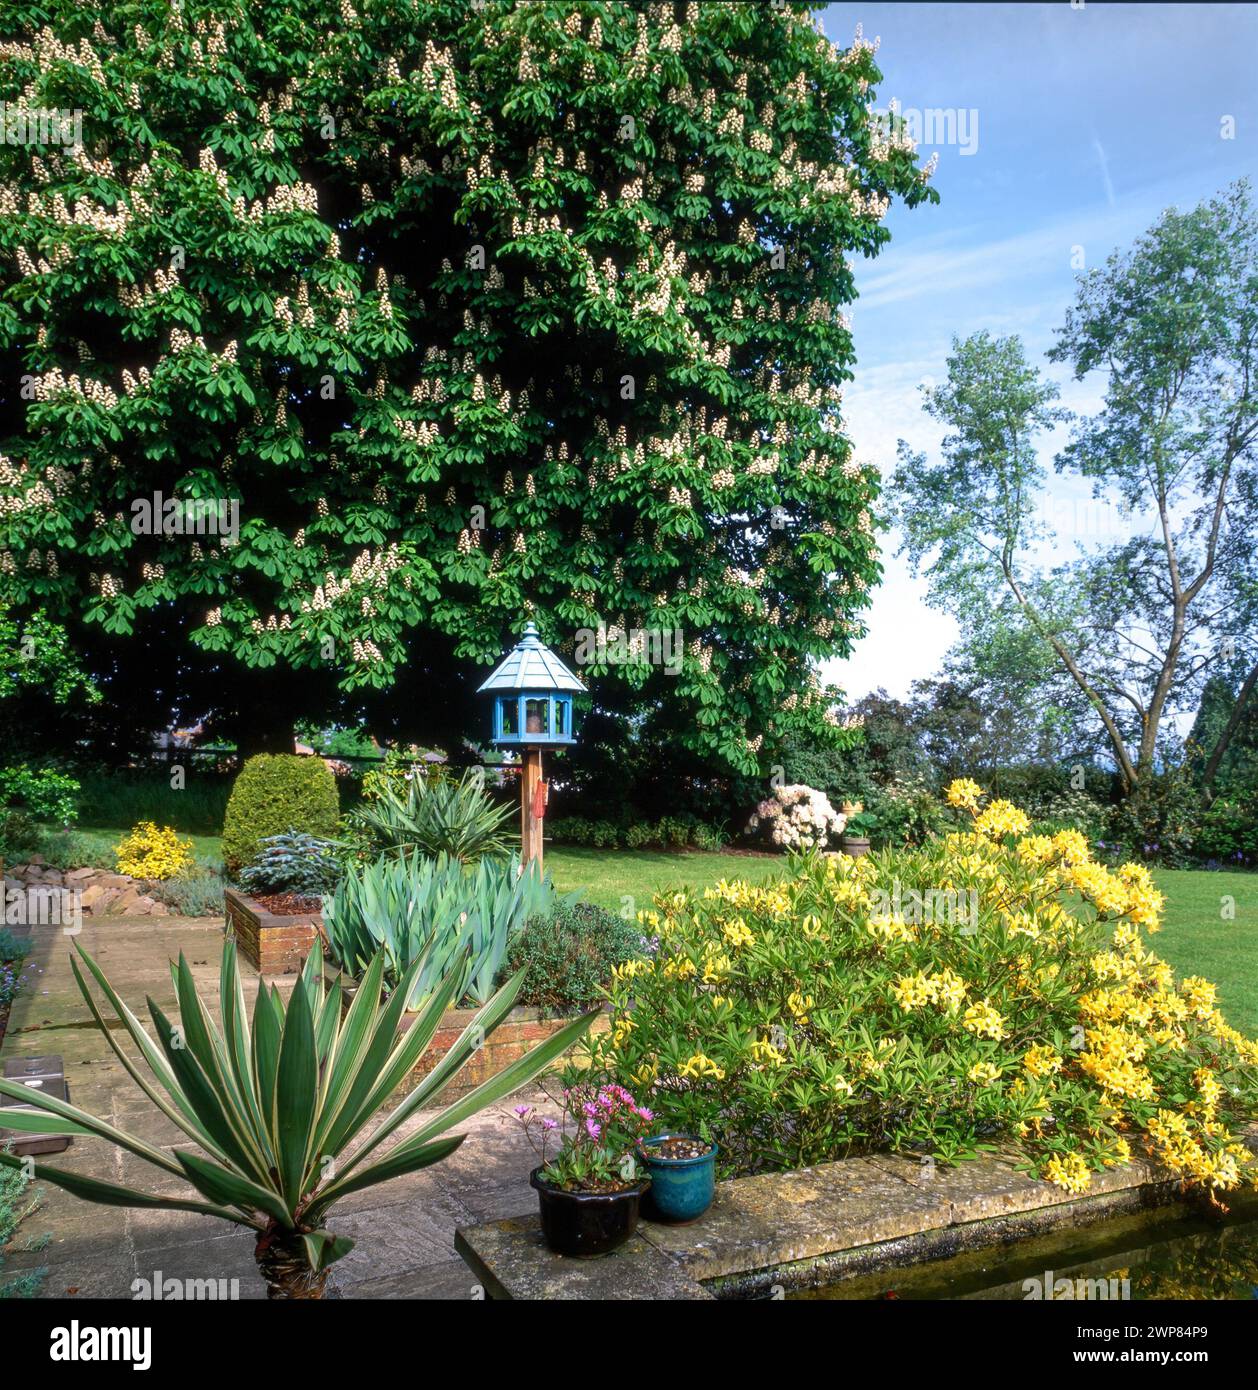 Joli jardin domestique paysager avec châtaignier en fleur, pelouses, lits surélevés et mangeoire ornée d'oiseaux, May, Leicestershire, Angleterre, Royaume-Uni Banque D'Images